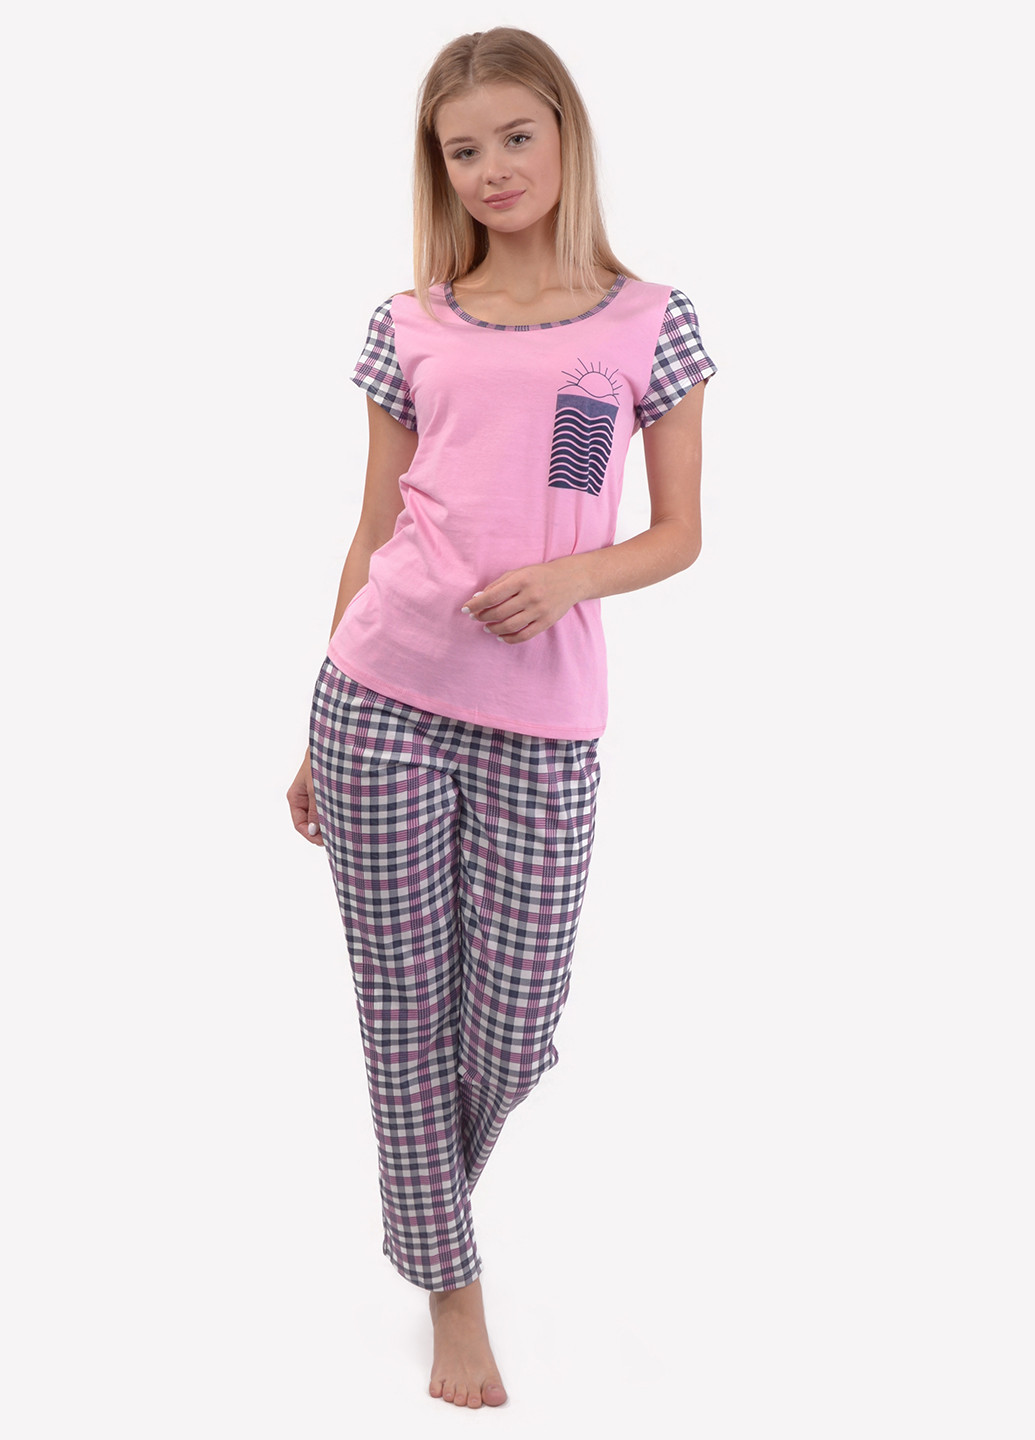 Розовая всесезон пижама (футболка, брюки) футболка + брюки NEL